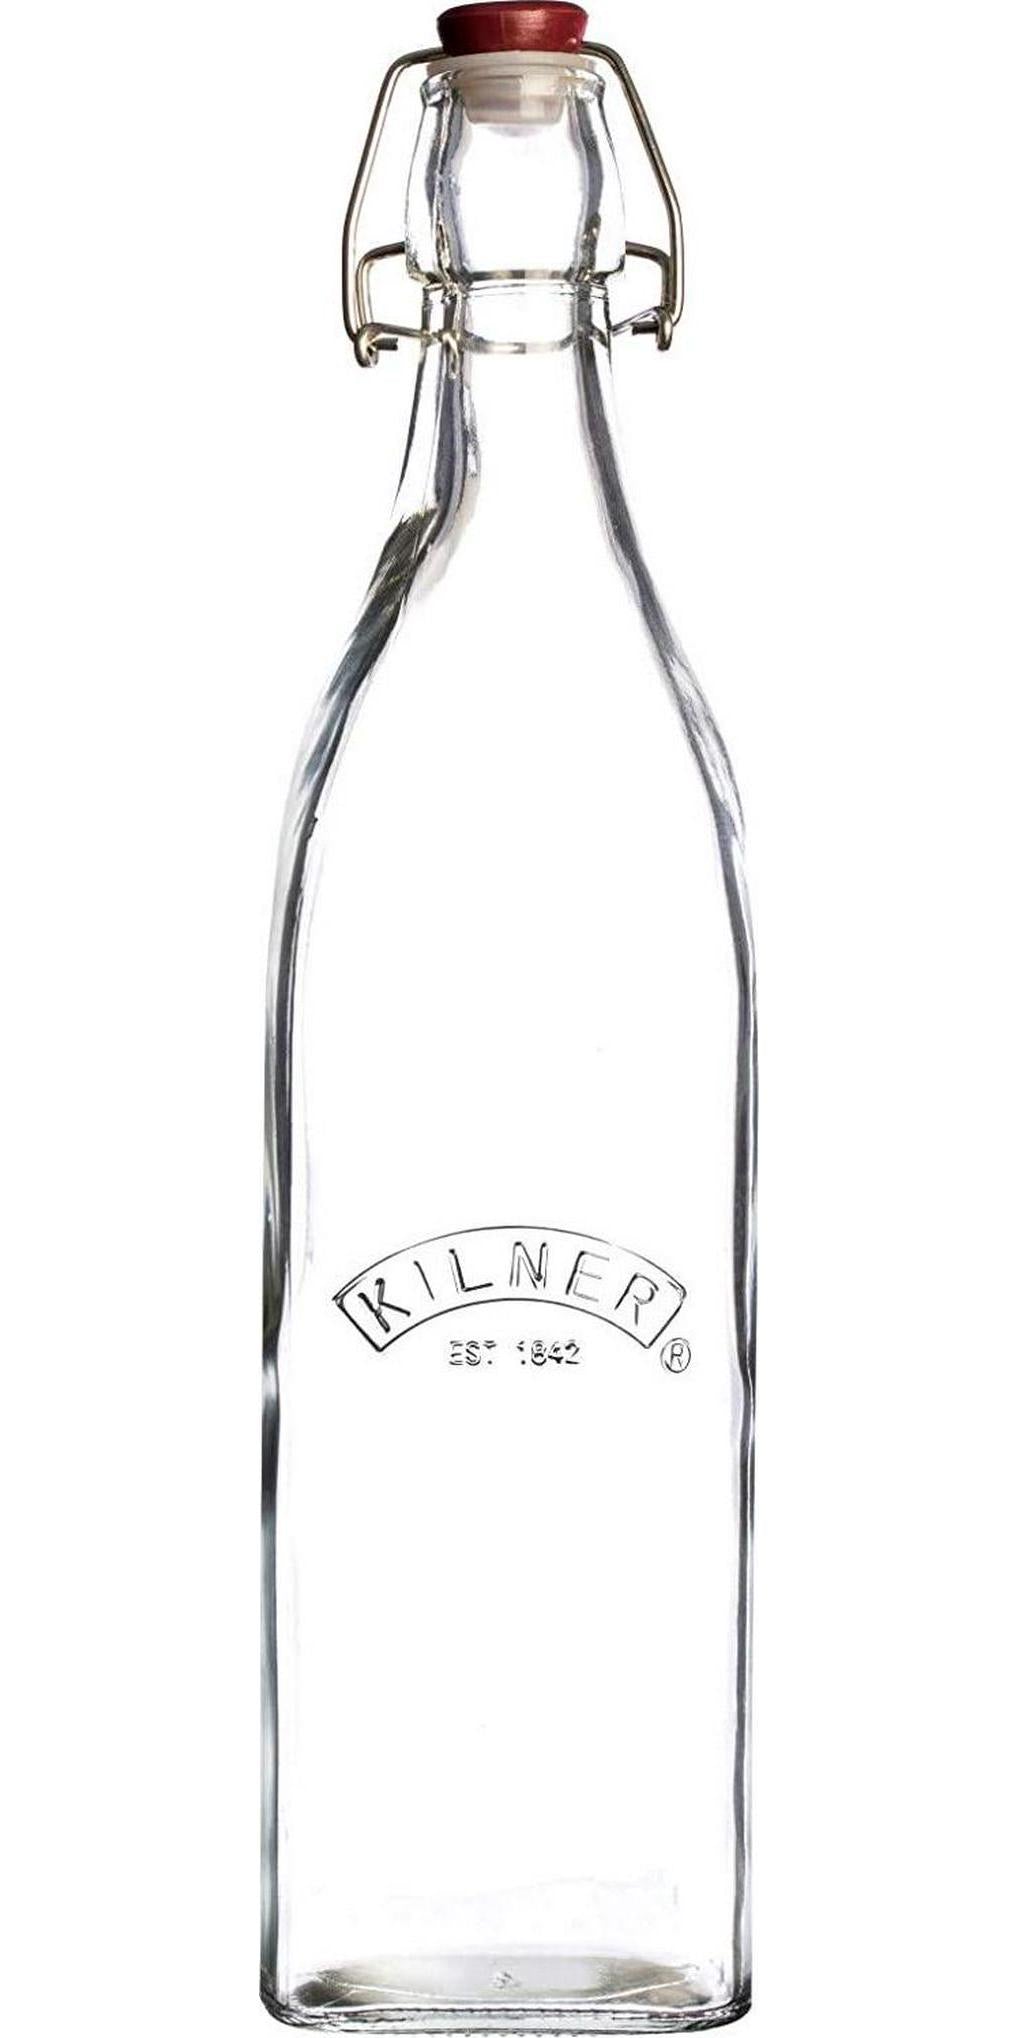 Kilner, Kilner 25.471 Square Clip Top Bottle, 550ml, Clear 01688, 6.7 x 6.7 x 27.4 cm